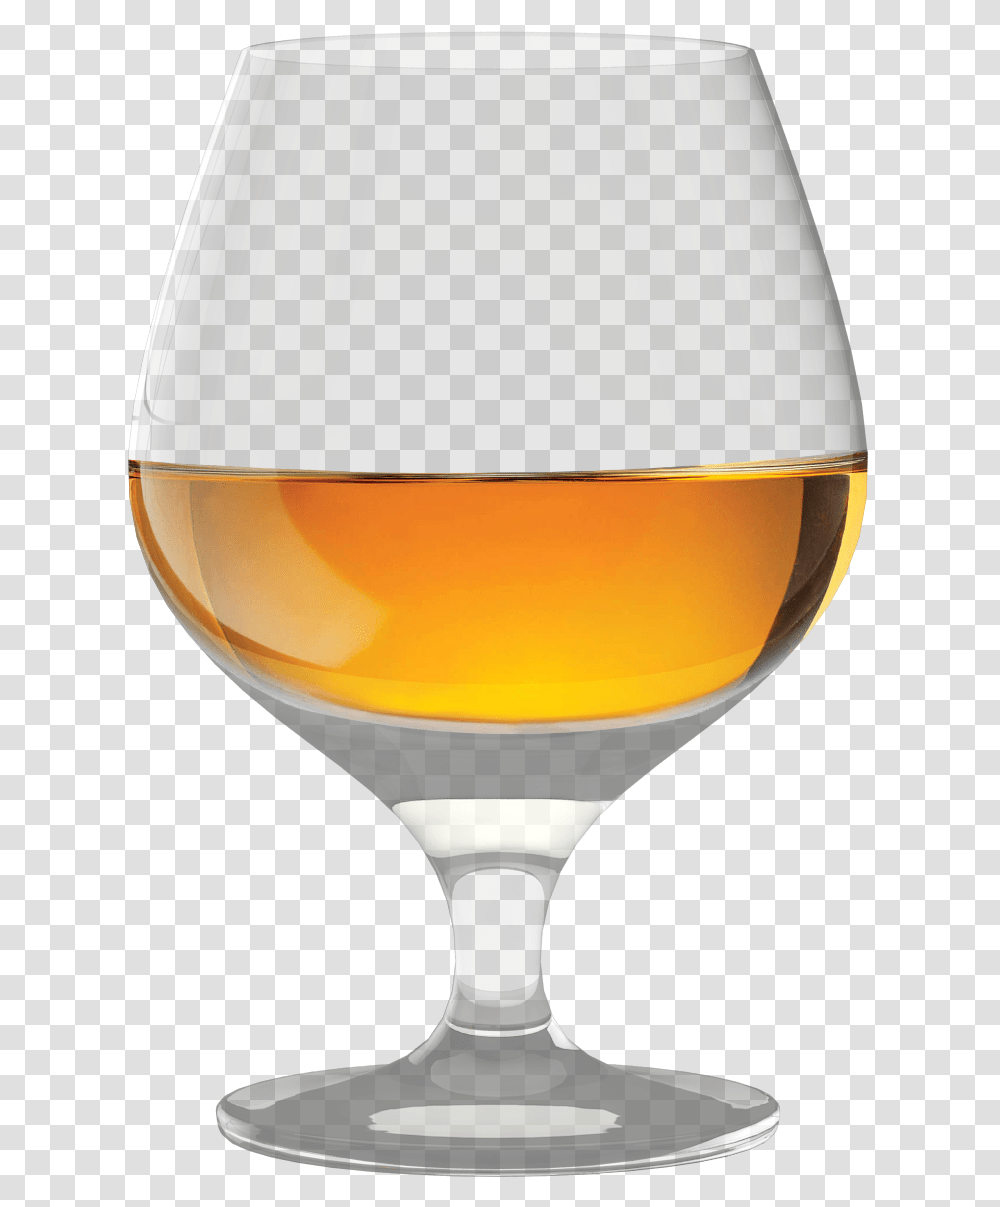 Cognac Glass Clip Art Cognac Glass, Wine Glass, Alcohol, Beverage, Drink Transparent Png